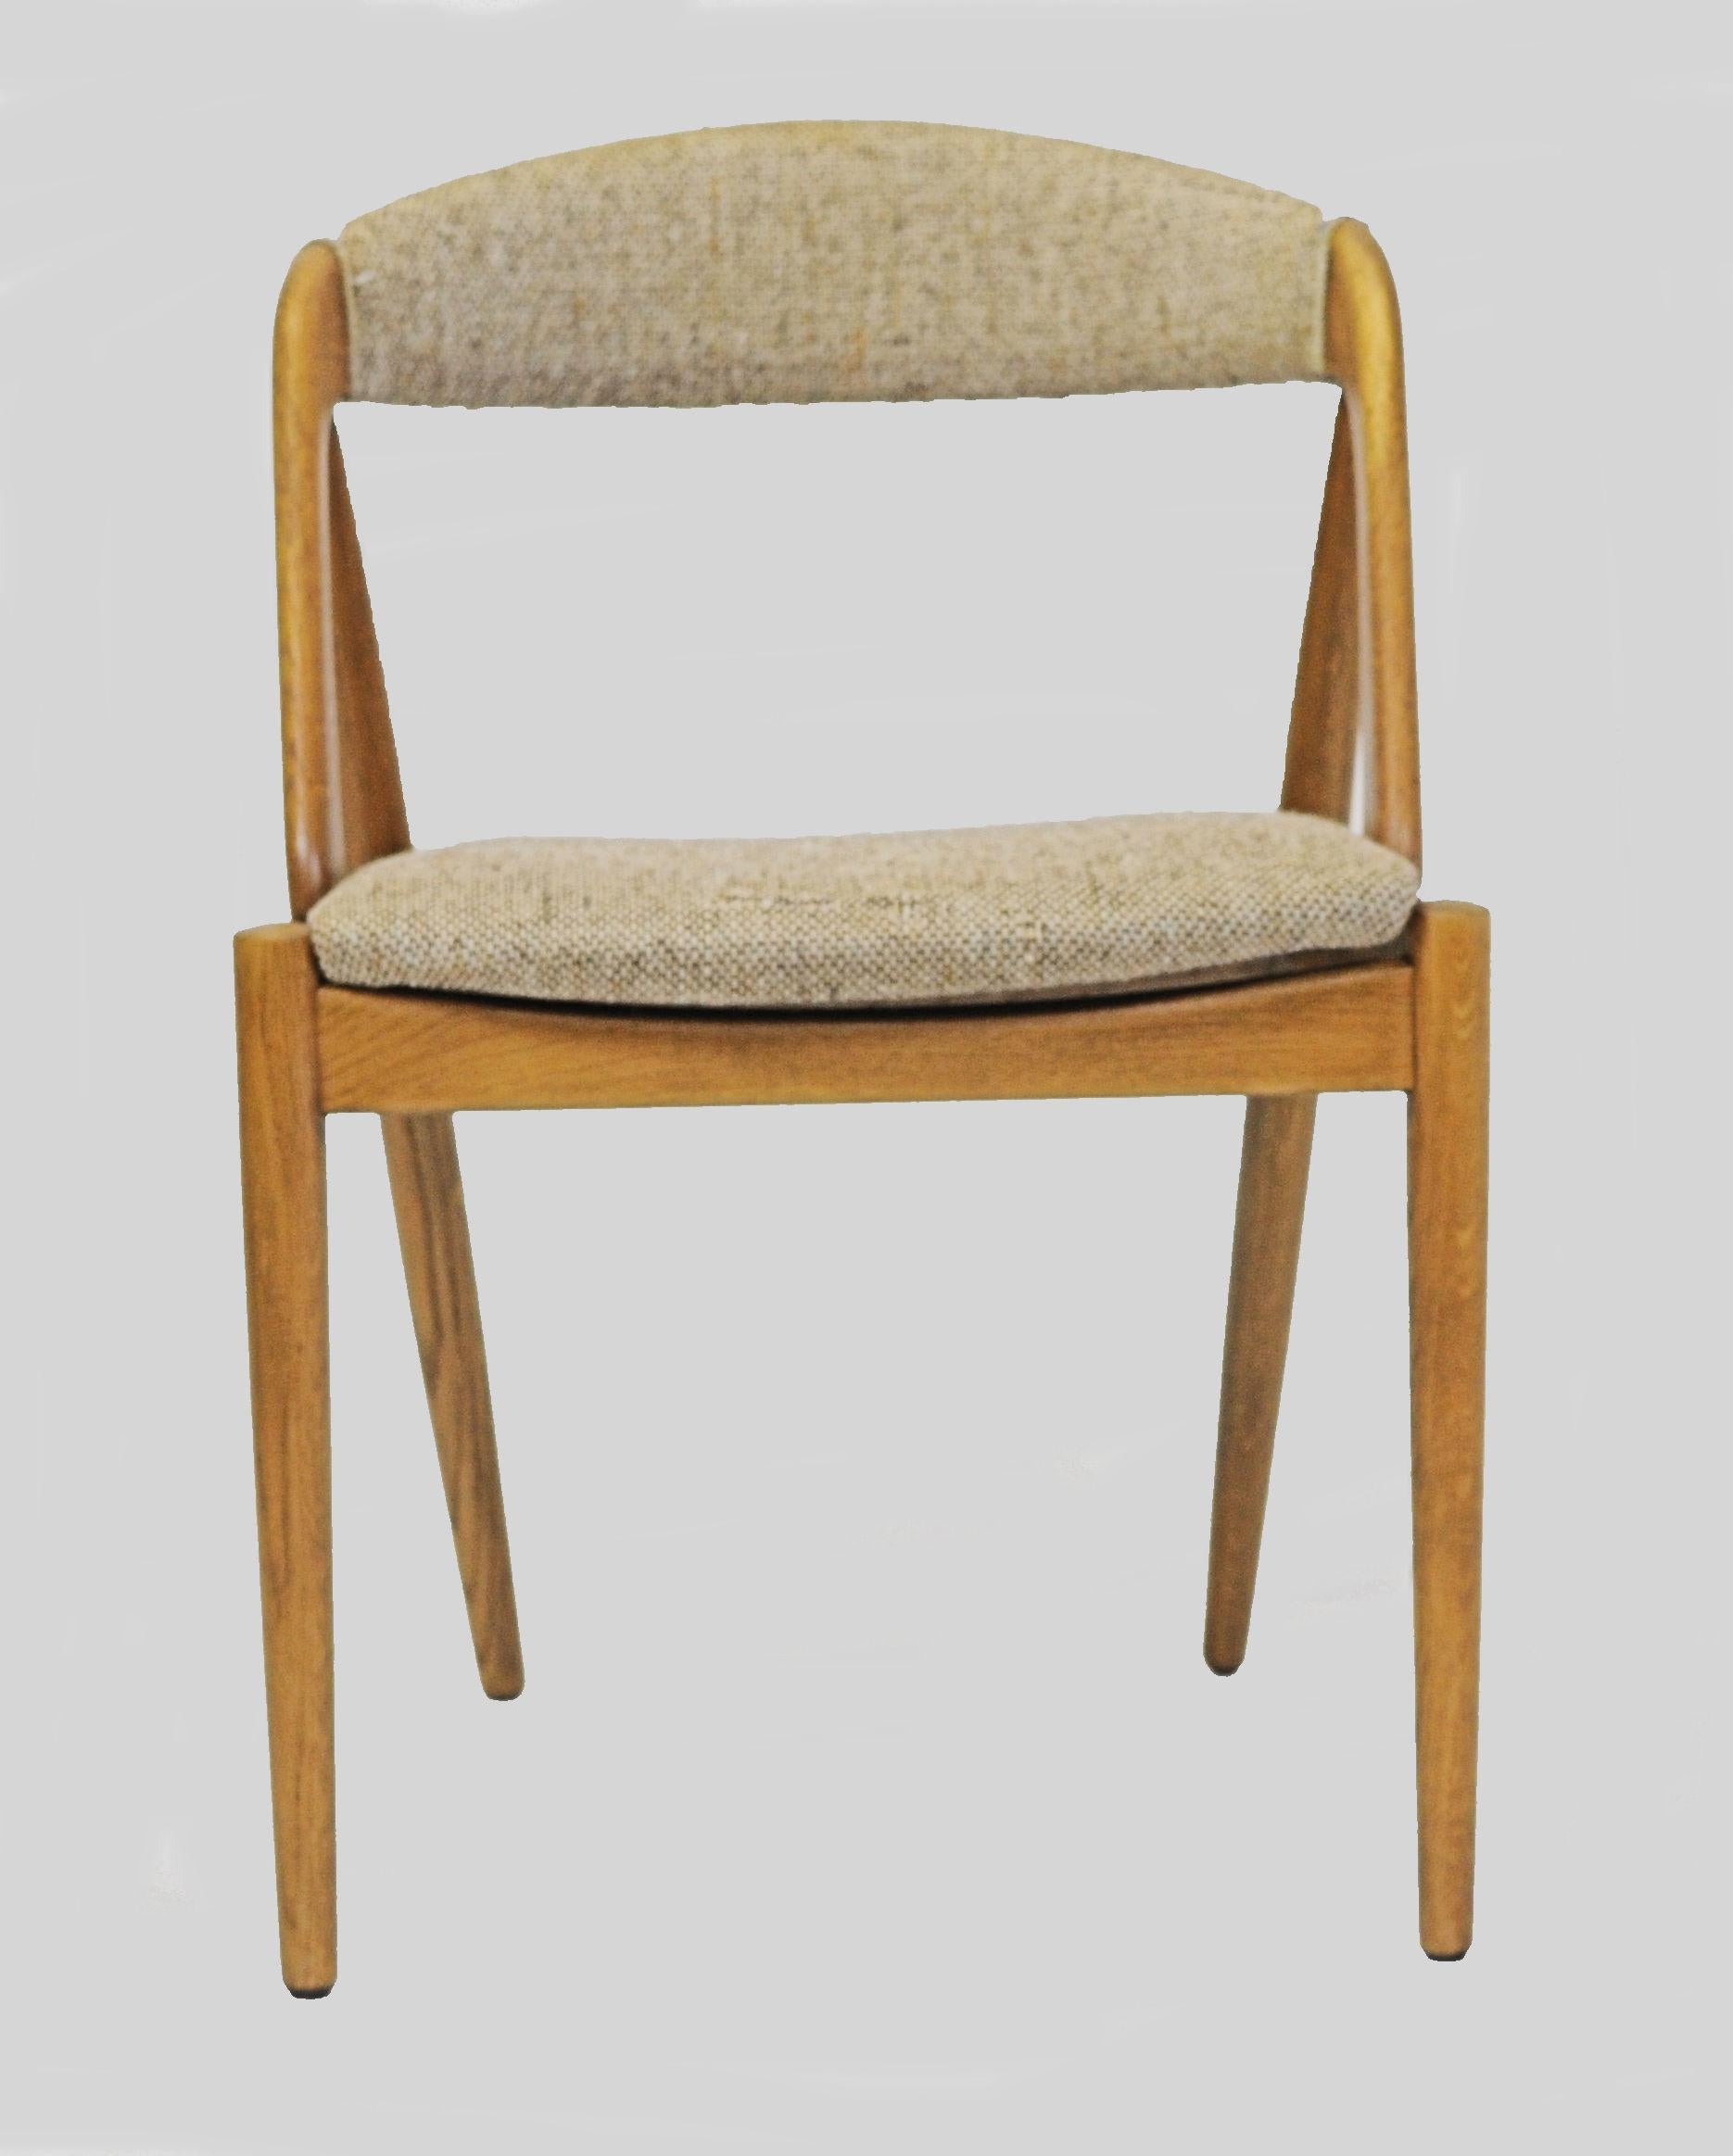 Acht vollständig restaurierte Kai Kristiansen Esszimmerstühle aus Eichenholz, individuell gepolstertAcht Esszimmerstühle Modell 31 aus Eichenholz, entworfen von Kai Kristiansen für die Schou Andersens Møbelfabrik im Jahr 1956.

Das Modell 31 chaie -